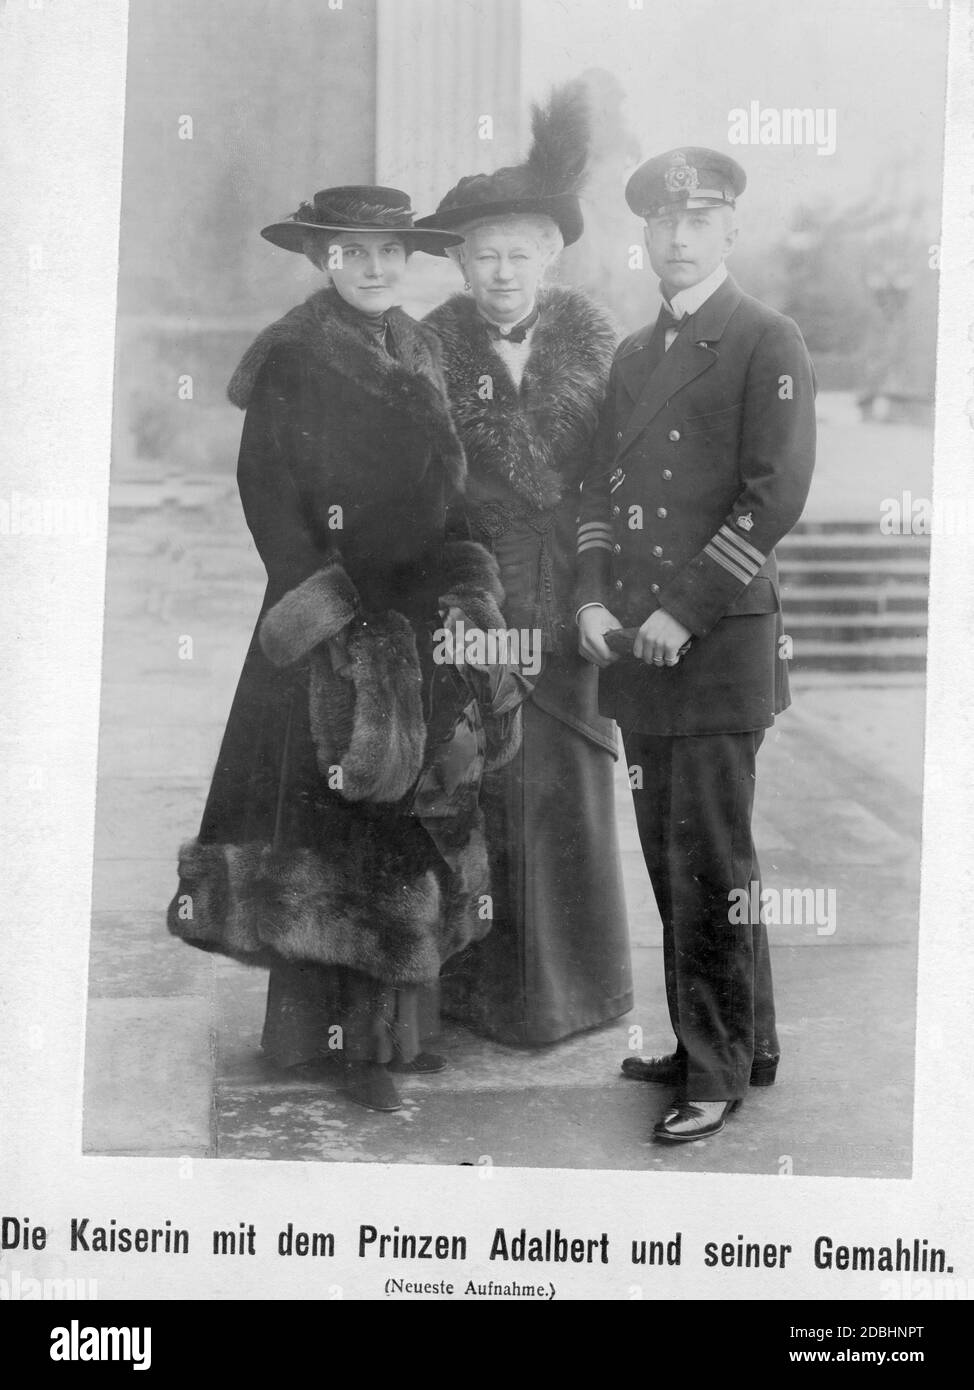 La fotografia mostra l'imperatrice Augusta Victoria (al centro) insieme al figlio Adalberto di Prussia (a destra, nell'uniforme di un capitano di corvette) e alla moglie Adelheid di Prussia (a sinistra, nee von Sachsen-Meiningen). Foto non datata, scattata intorno al 1916. Foto Stock